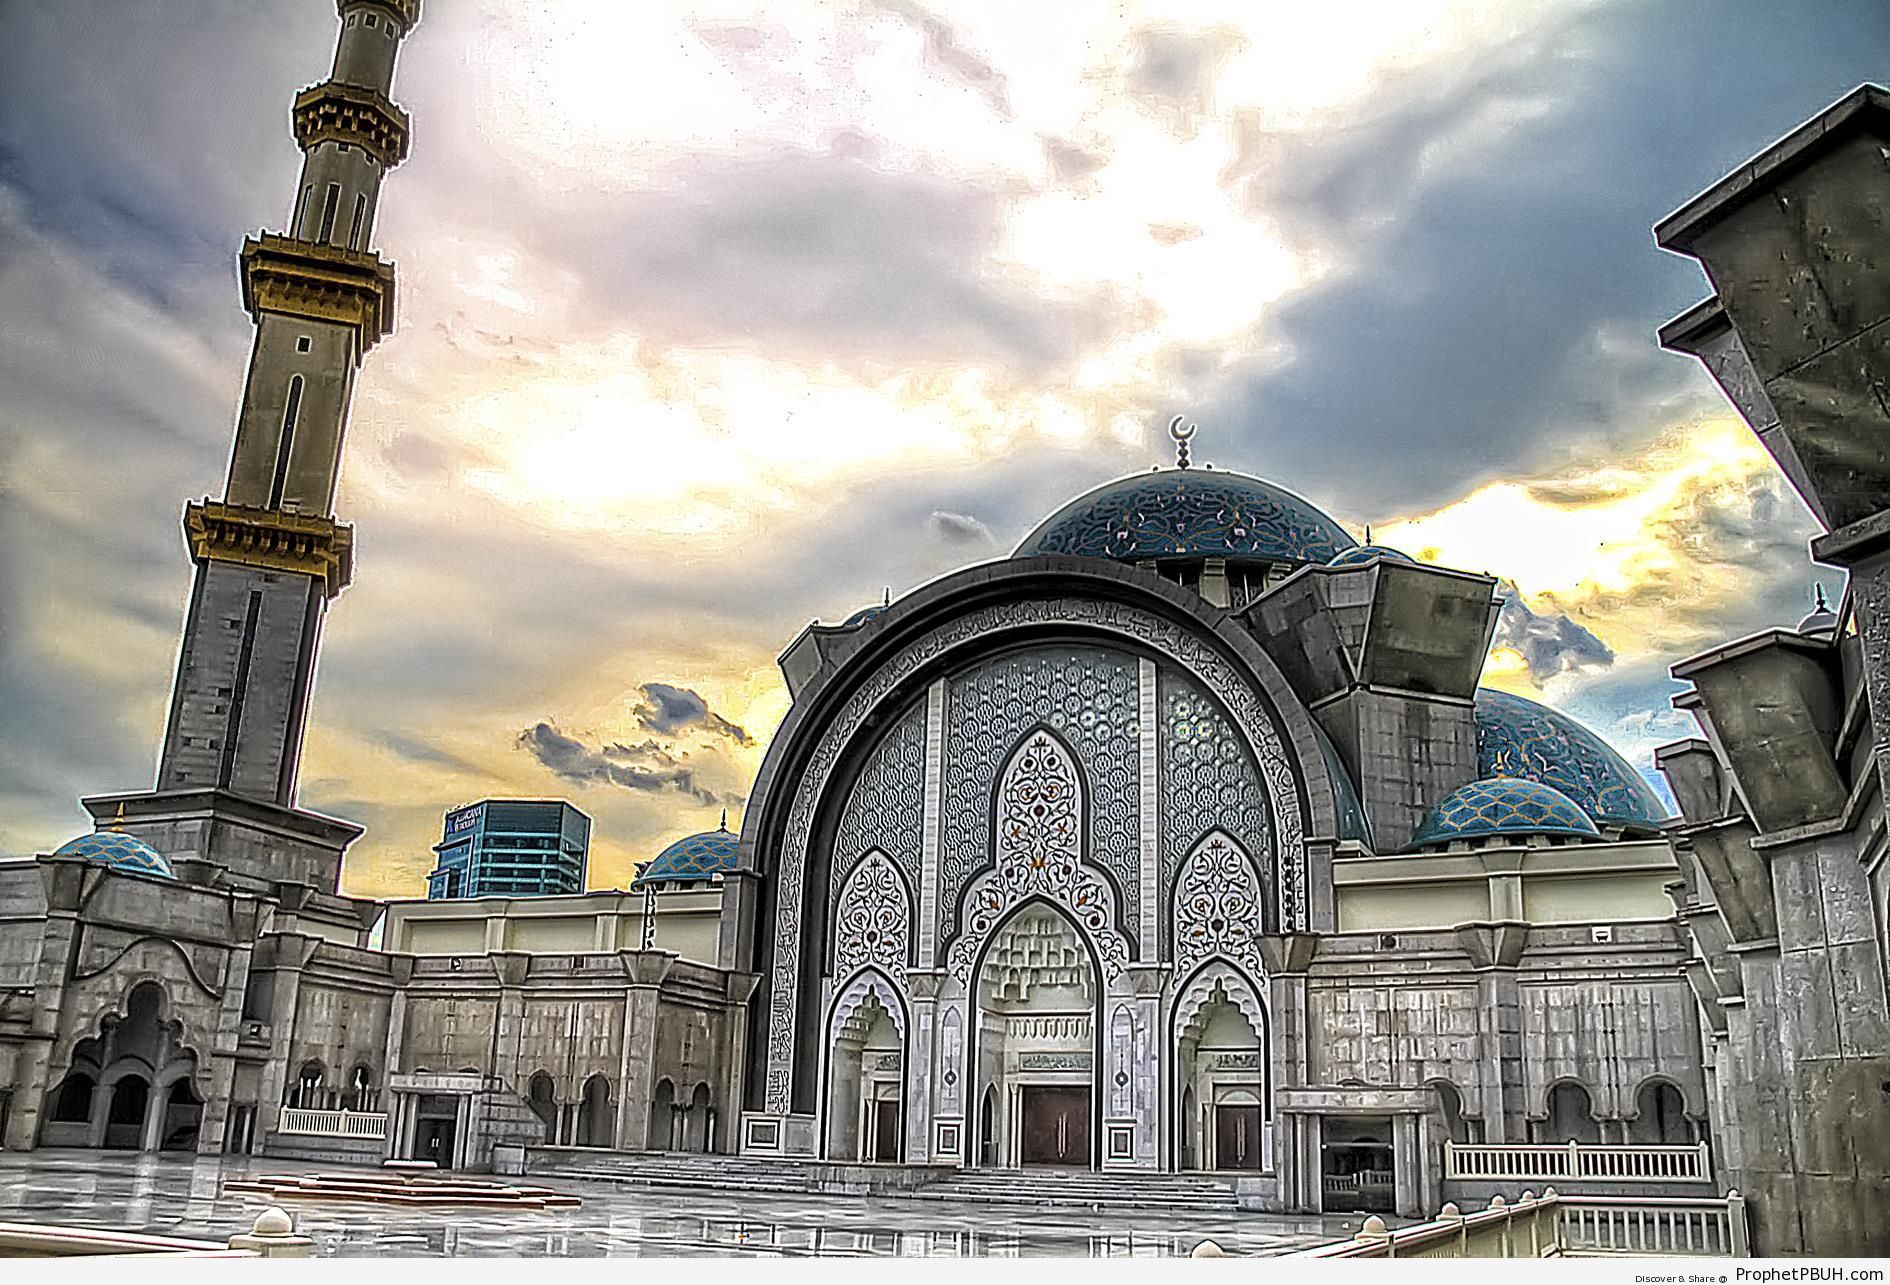 Masjid Wilayah in Kuala Lumpur, Malaysia - Islamic Architecture -Picture